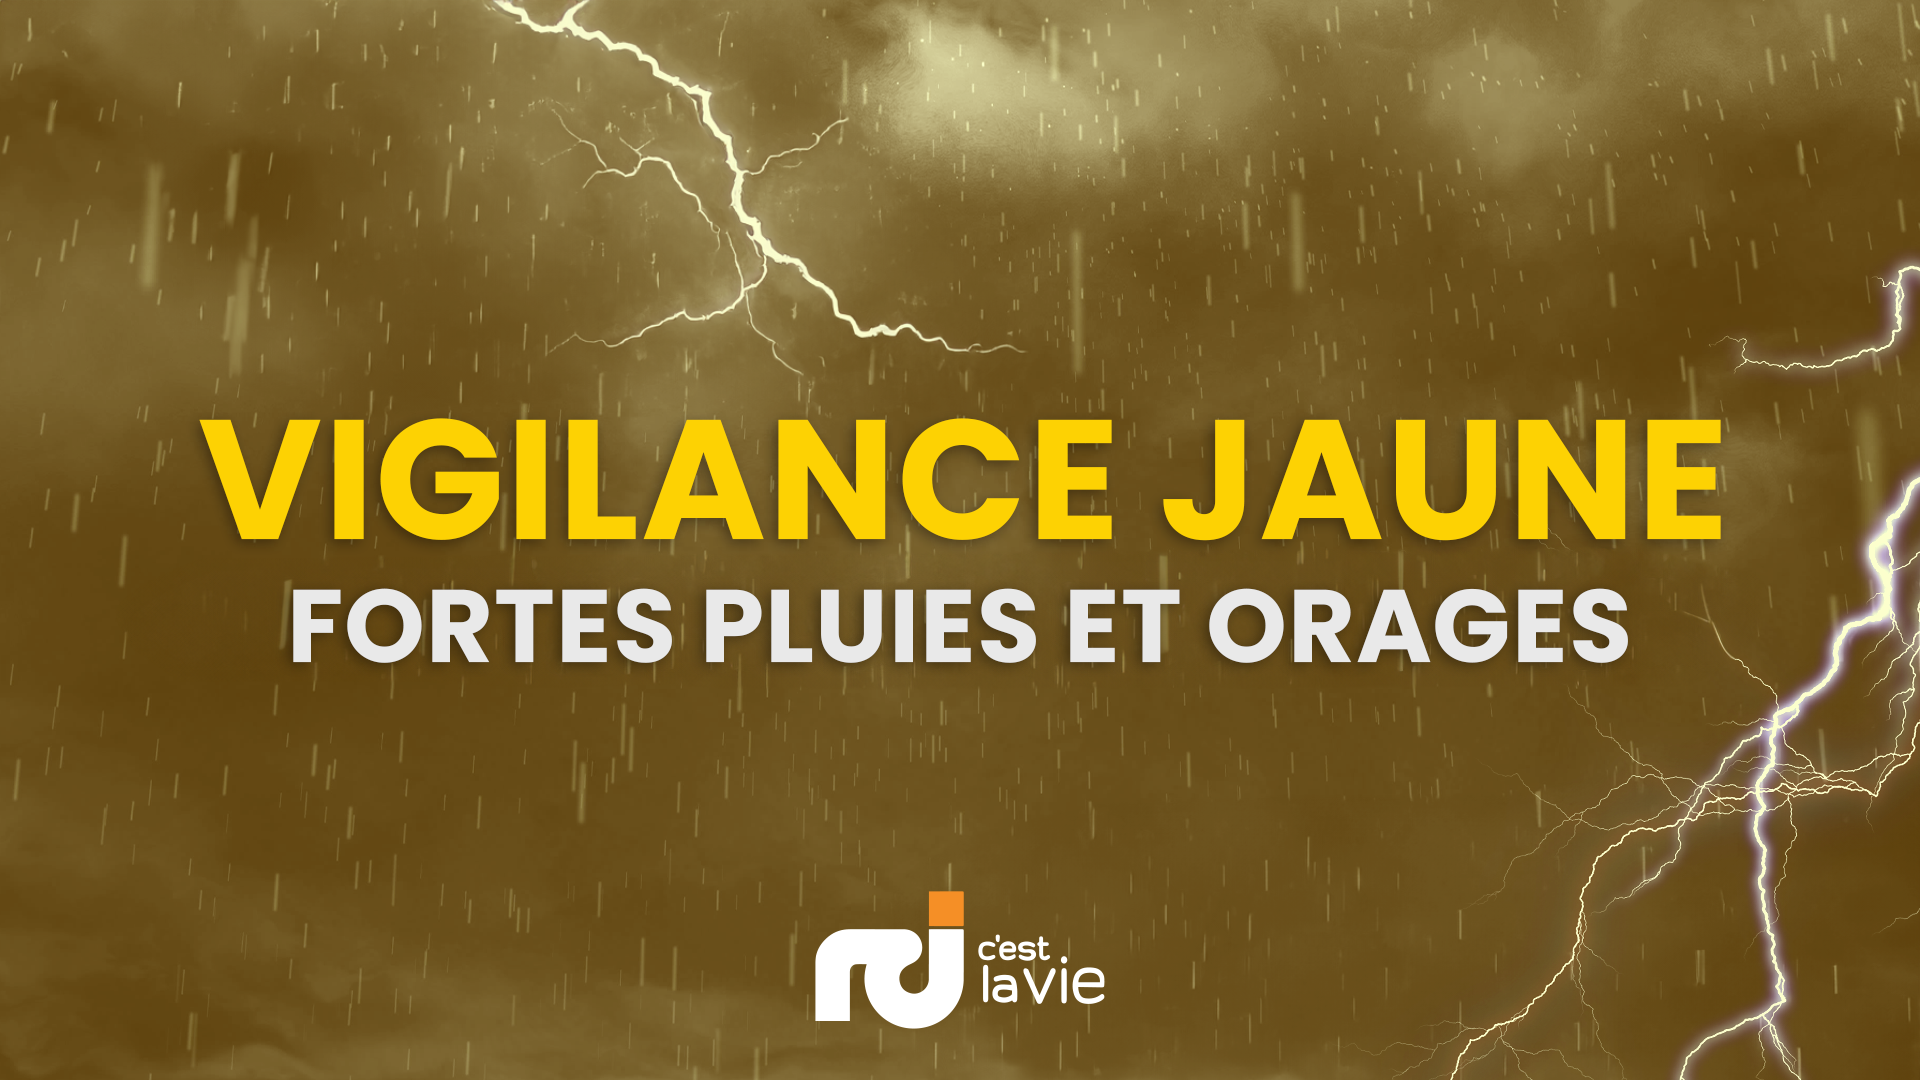     La Guadeloupe en vigilance jaune « fortes pluies et orages » et « vagues - submersion »

